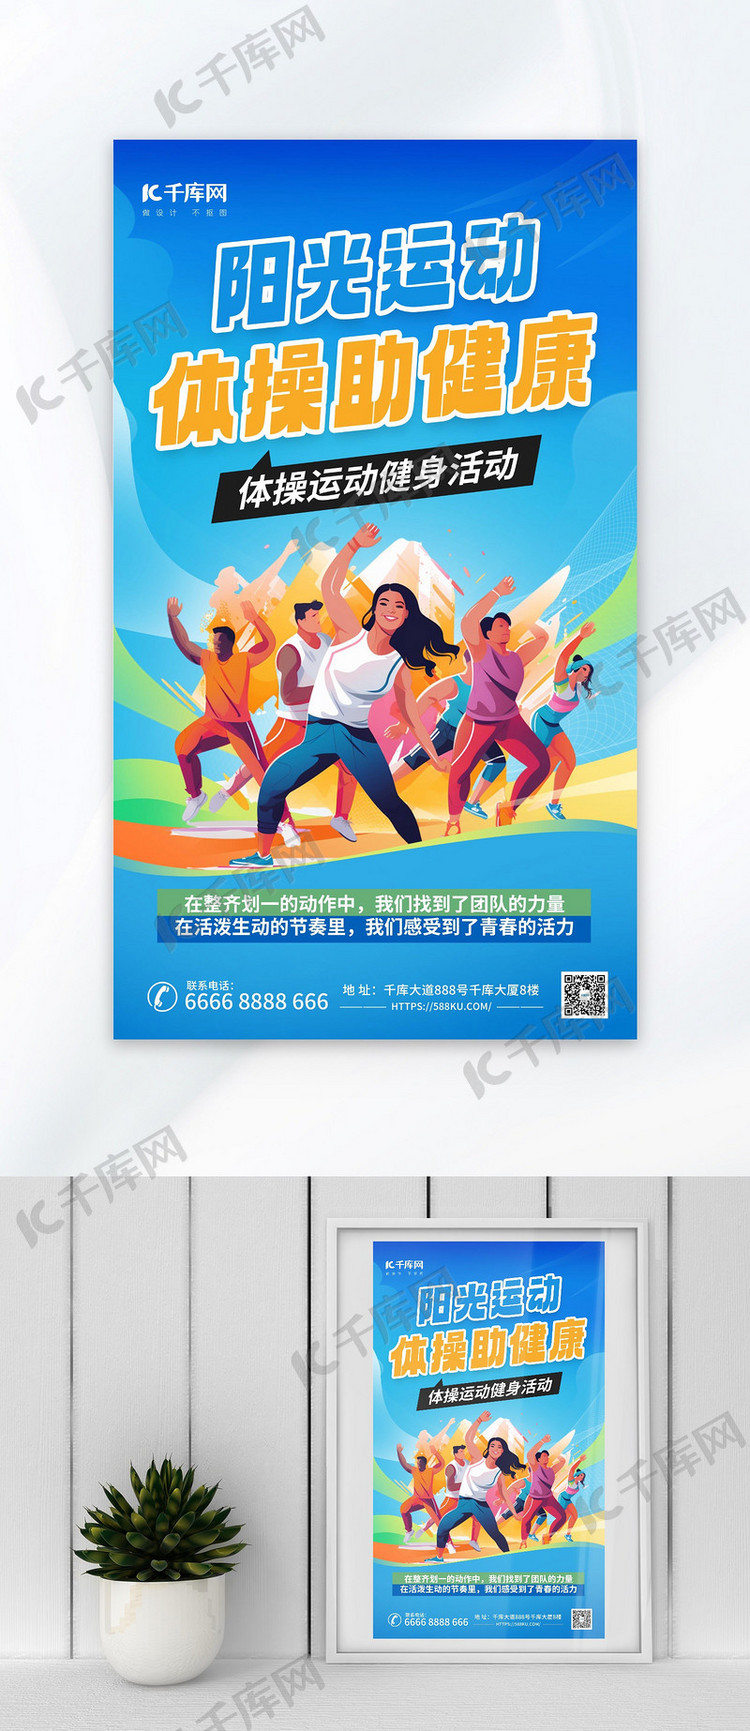 广播体操运动健身蓝色广告宣传海报